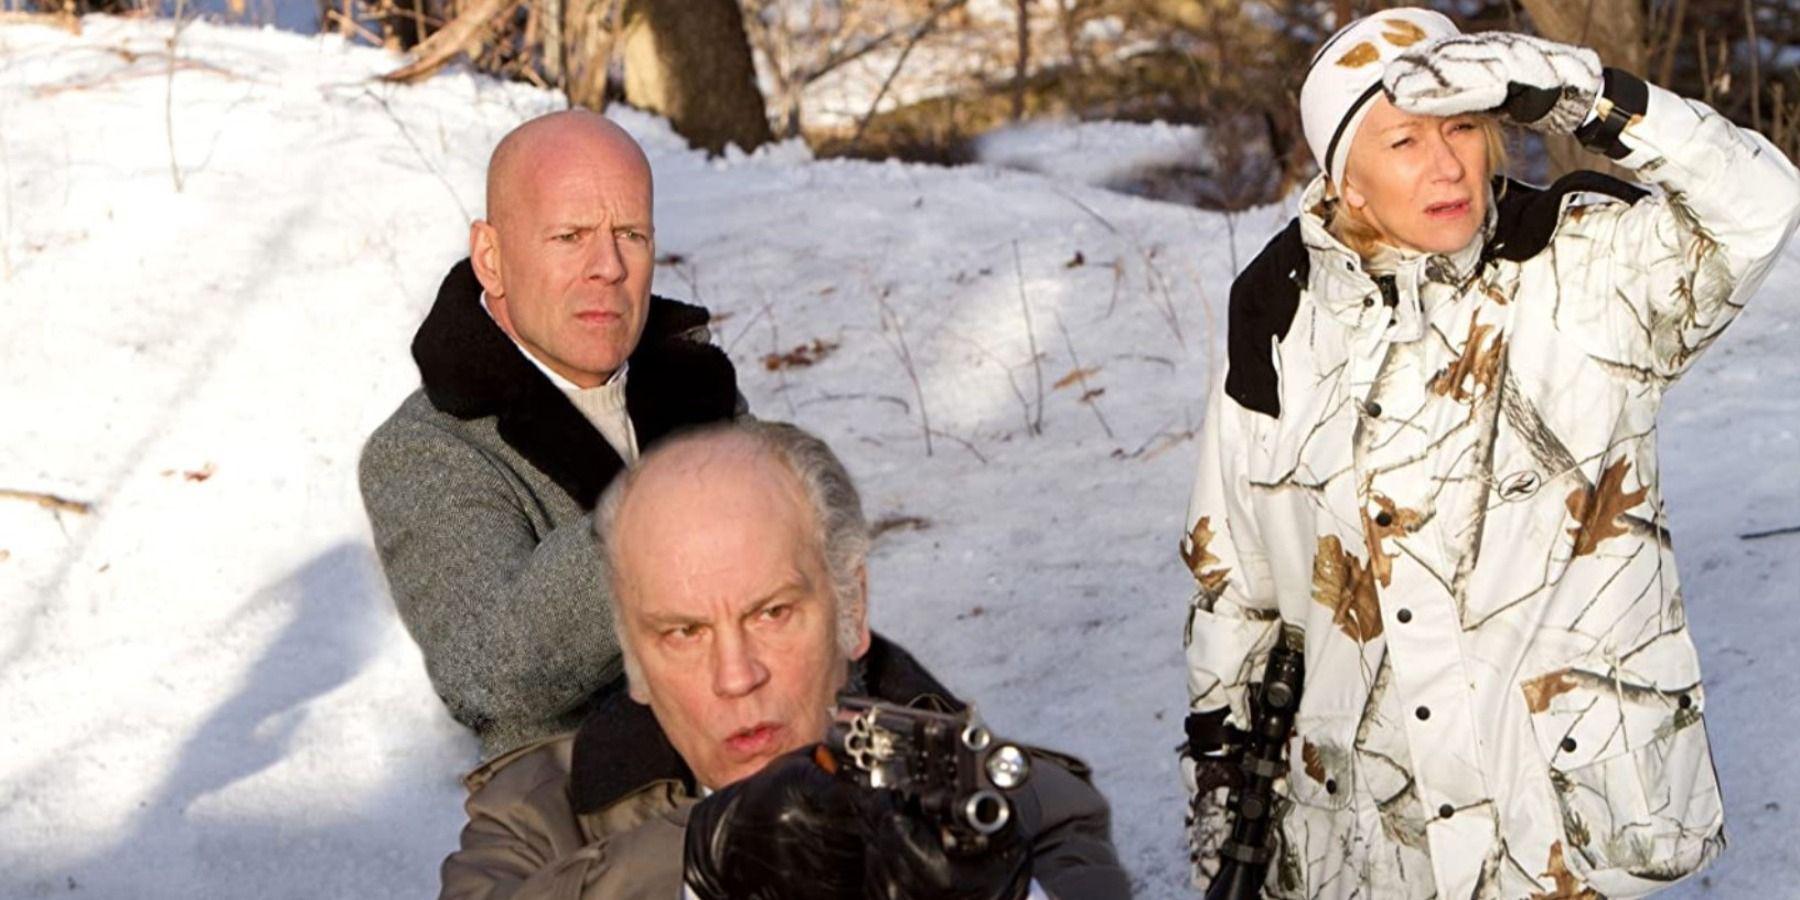 Vermelho: a duologia de ação de Bruce Willis merece outro olhar